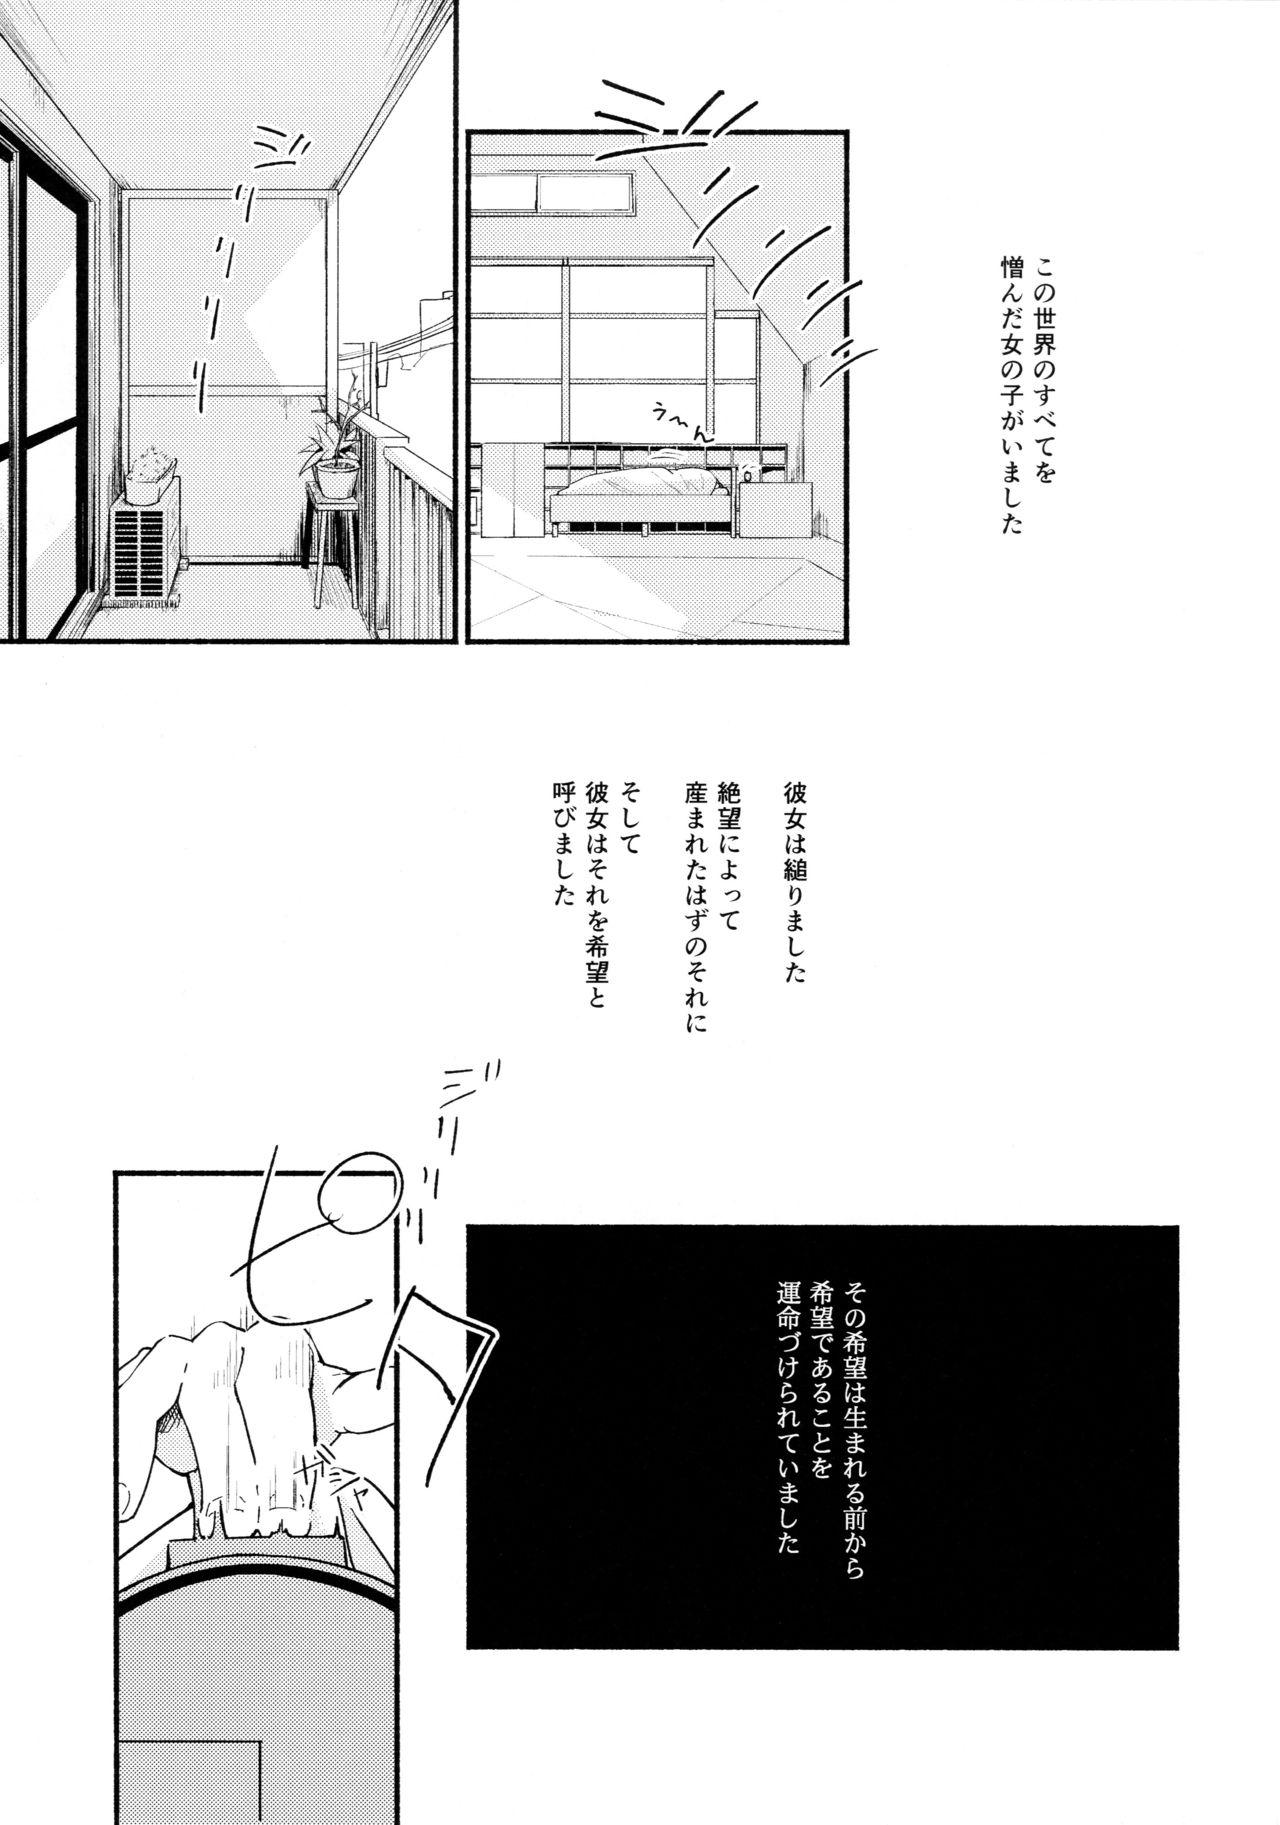 Pervs Namae no Nai Kaijitsu Ichi Doggystyle - Page 3